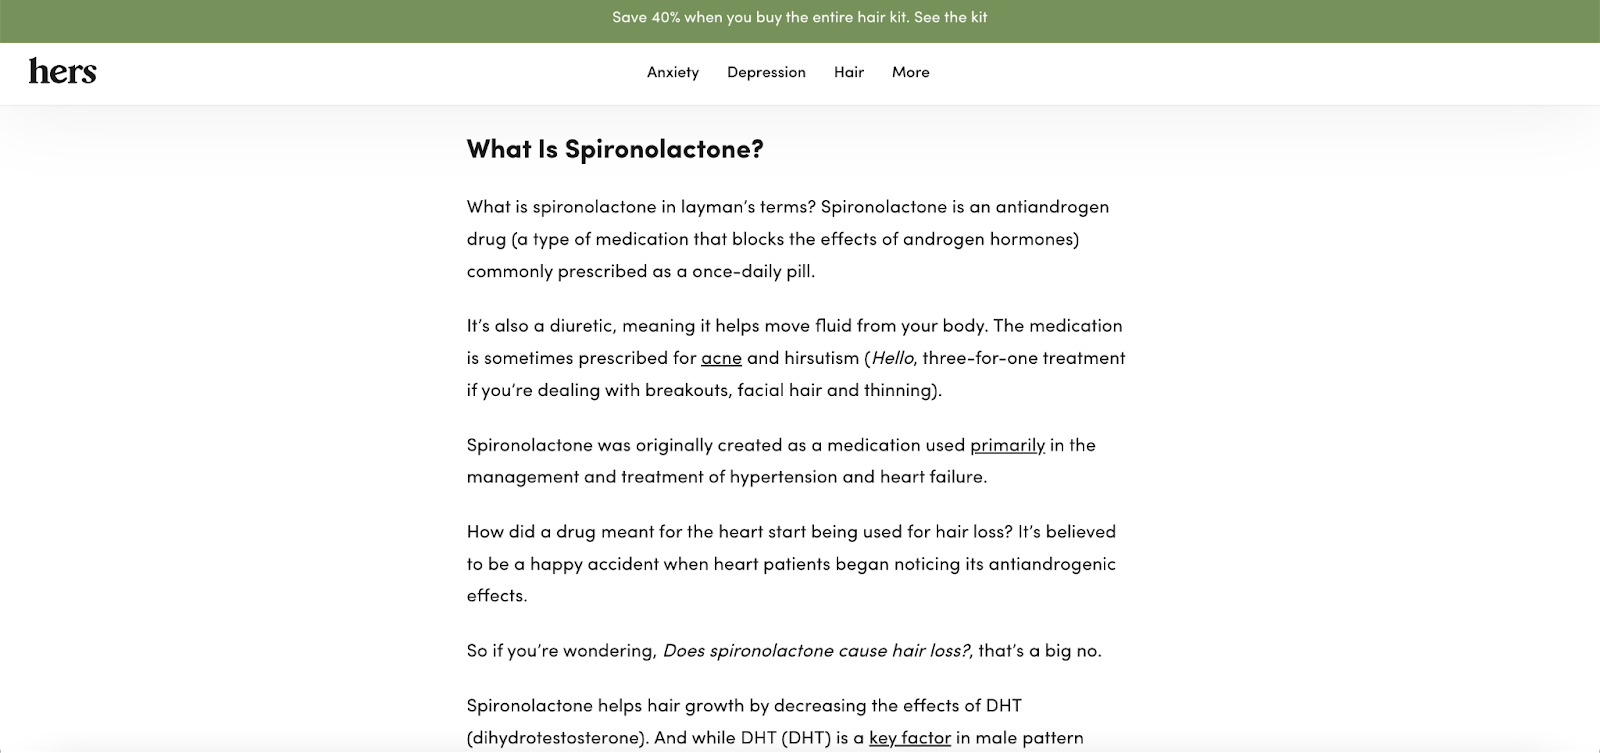 छवि हर्स के उत्पादों में से एक स्पिरोनोलैक्टोन का विवरण दिखाती है। यह उपयोगकर्ताओं को उत्पाद का स्पष्ट विवरण प्रदान करने का एक प्रयास है।